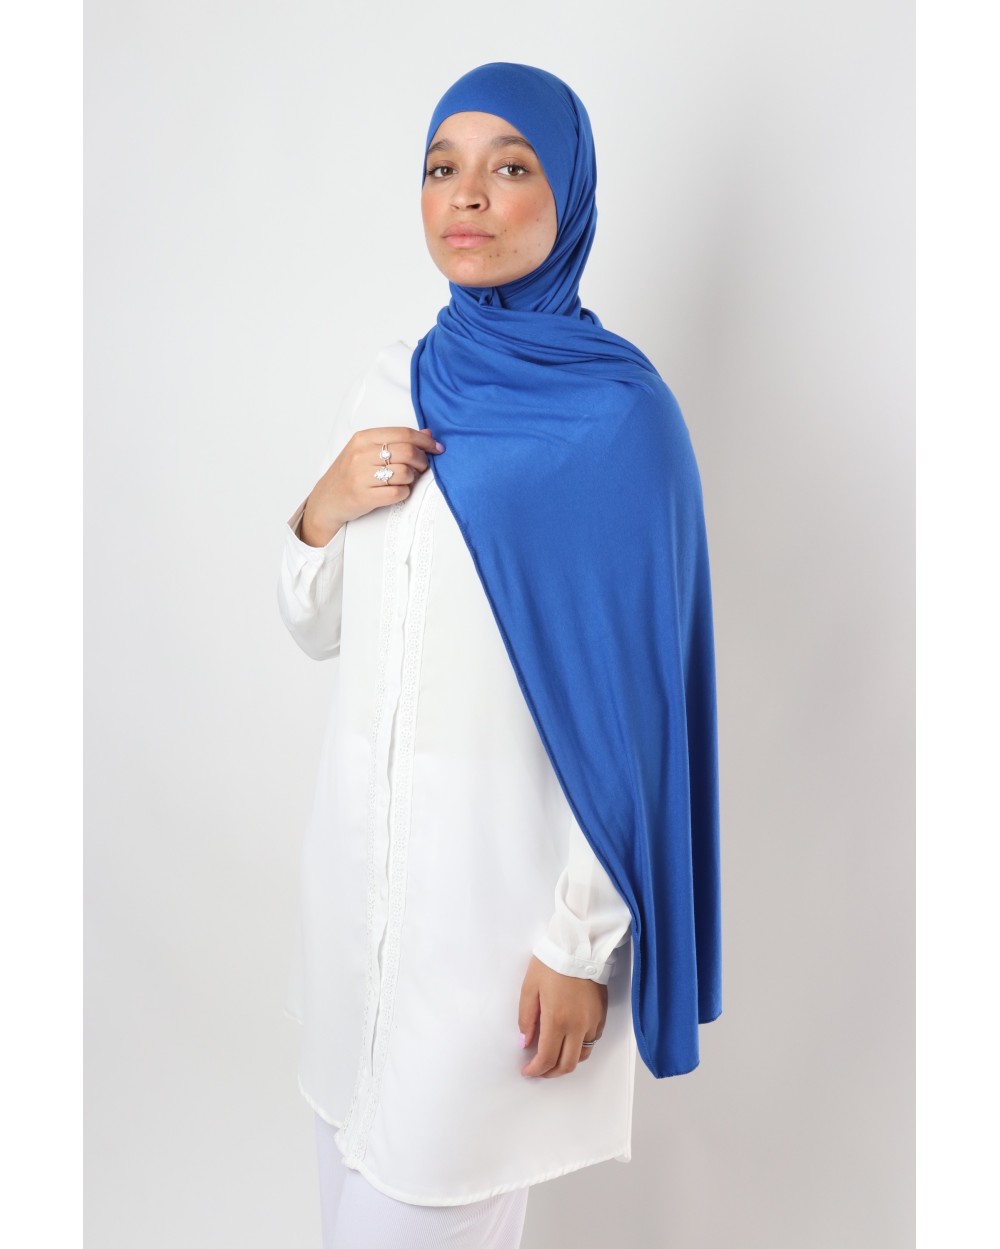 Sahel hijab integrated headband